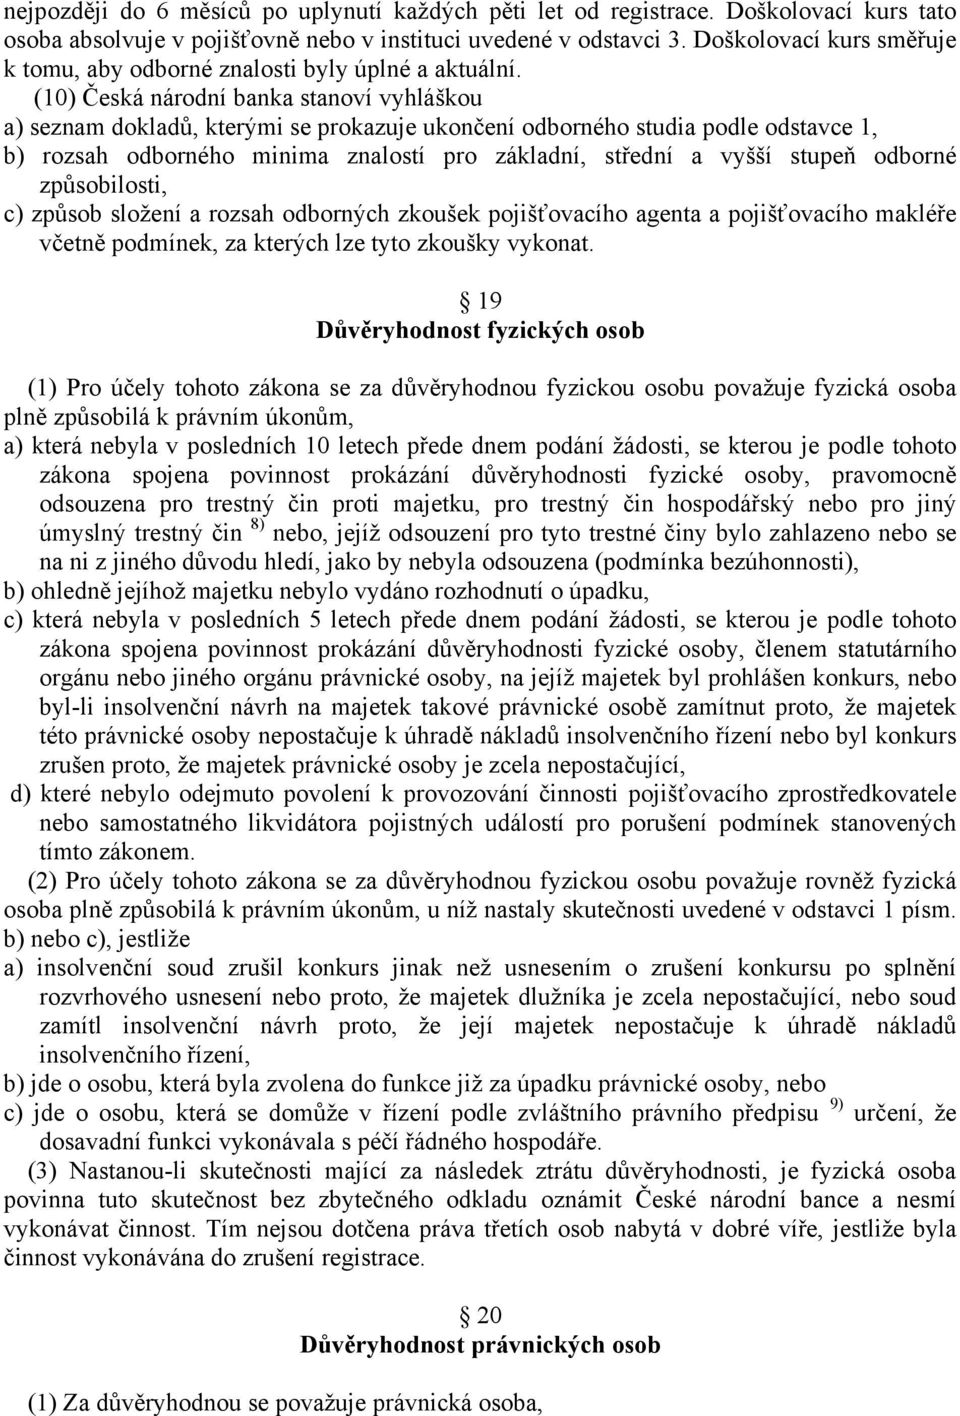 (10) Česká národní banka stanoví vyhláškou a) seznam dokladů, kterými se prokazuje ukončení odborného studia podle odstavce 1, b) rozsah odborného minima znalostí pro základní, střední a vyšší stupeň